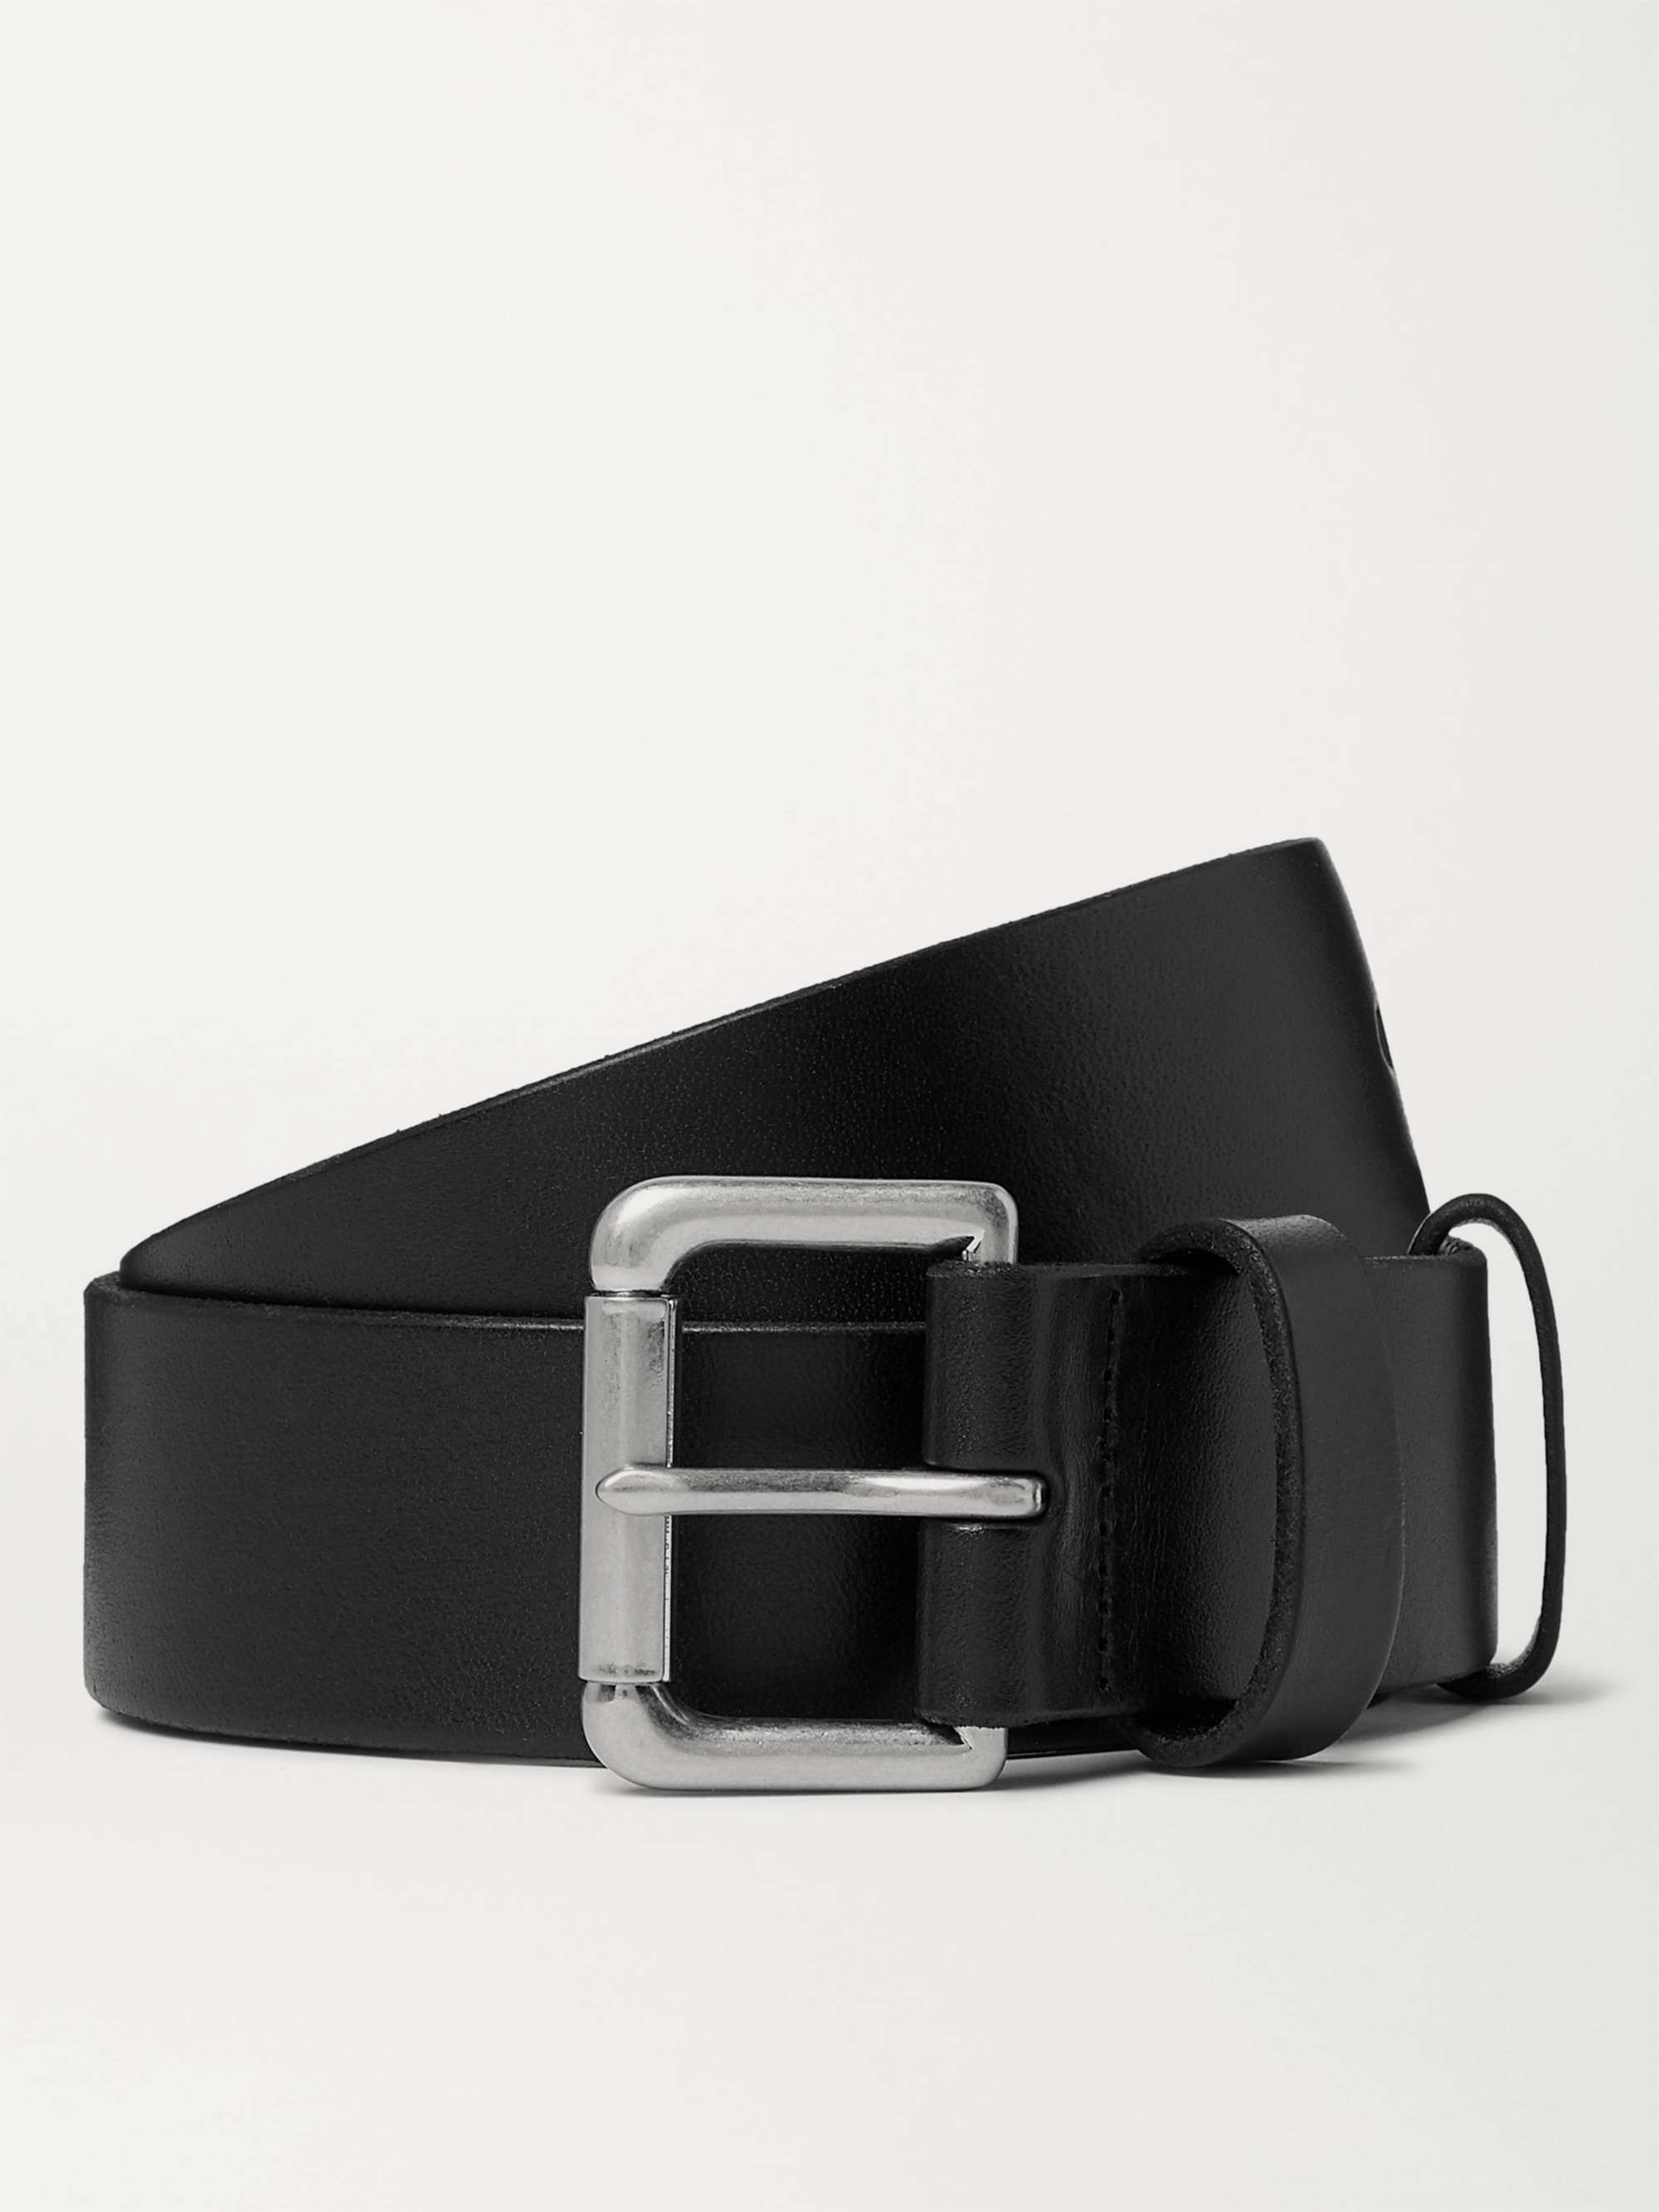 Black 4cm Leather Belt | POLO RALPH LAUREN | MR PORTER